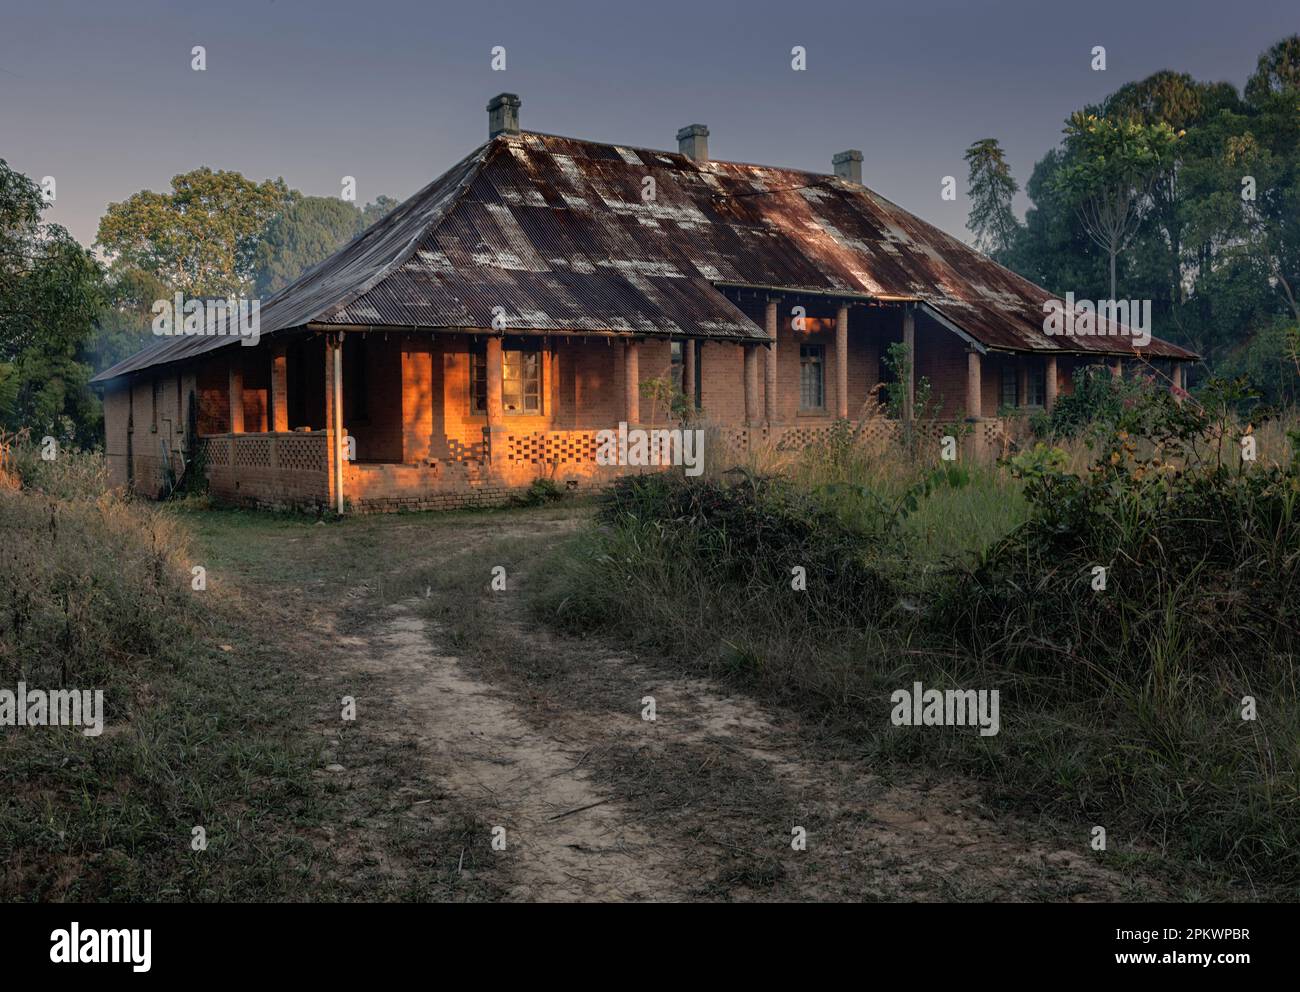 La prima luce del mattino cattura la veranda di una vecchia casa coloniale nel villaggio missionario di Livingstonia nel nord del Malawi. Foto Stock